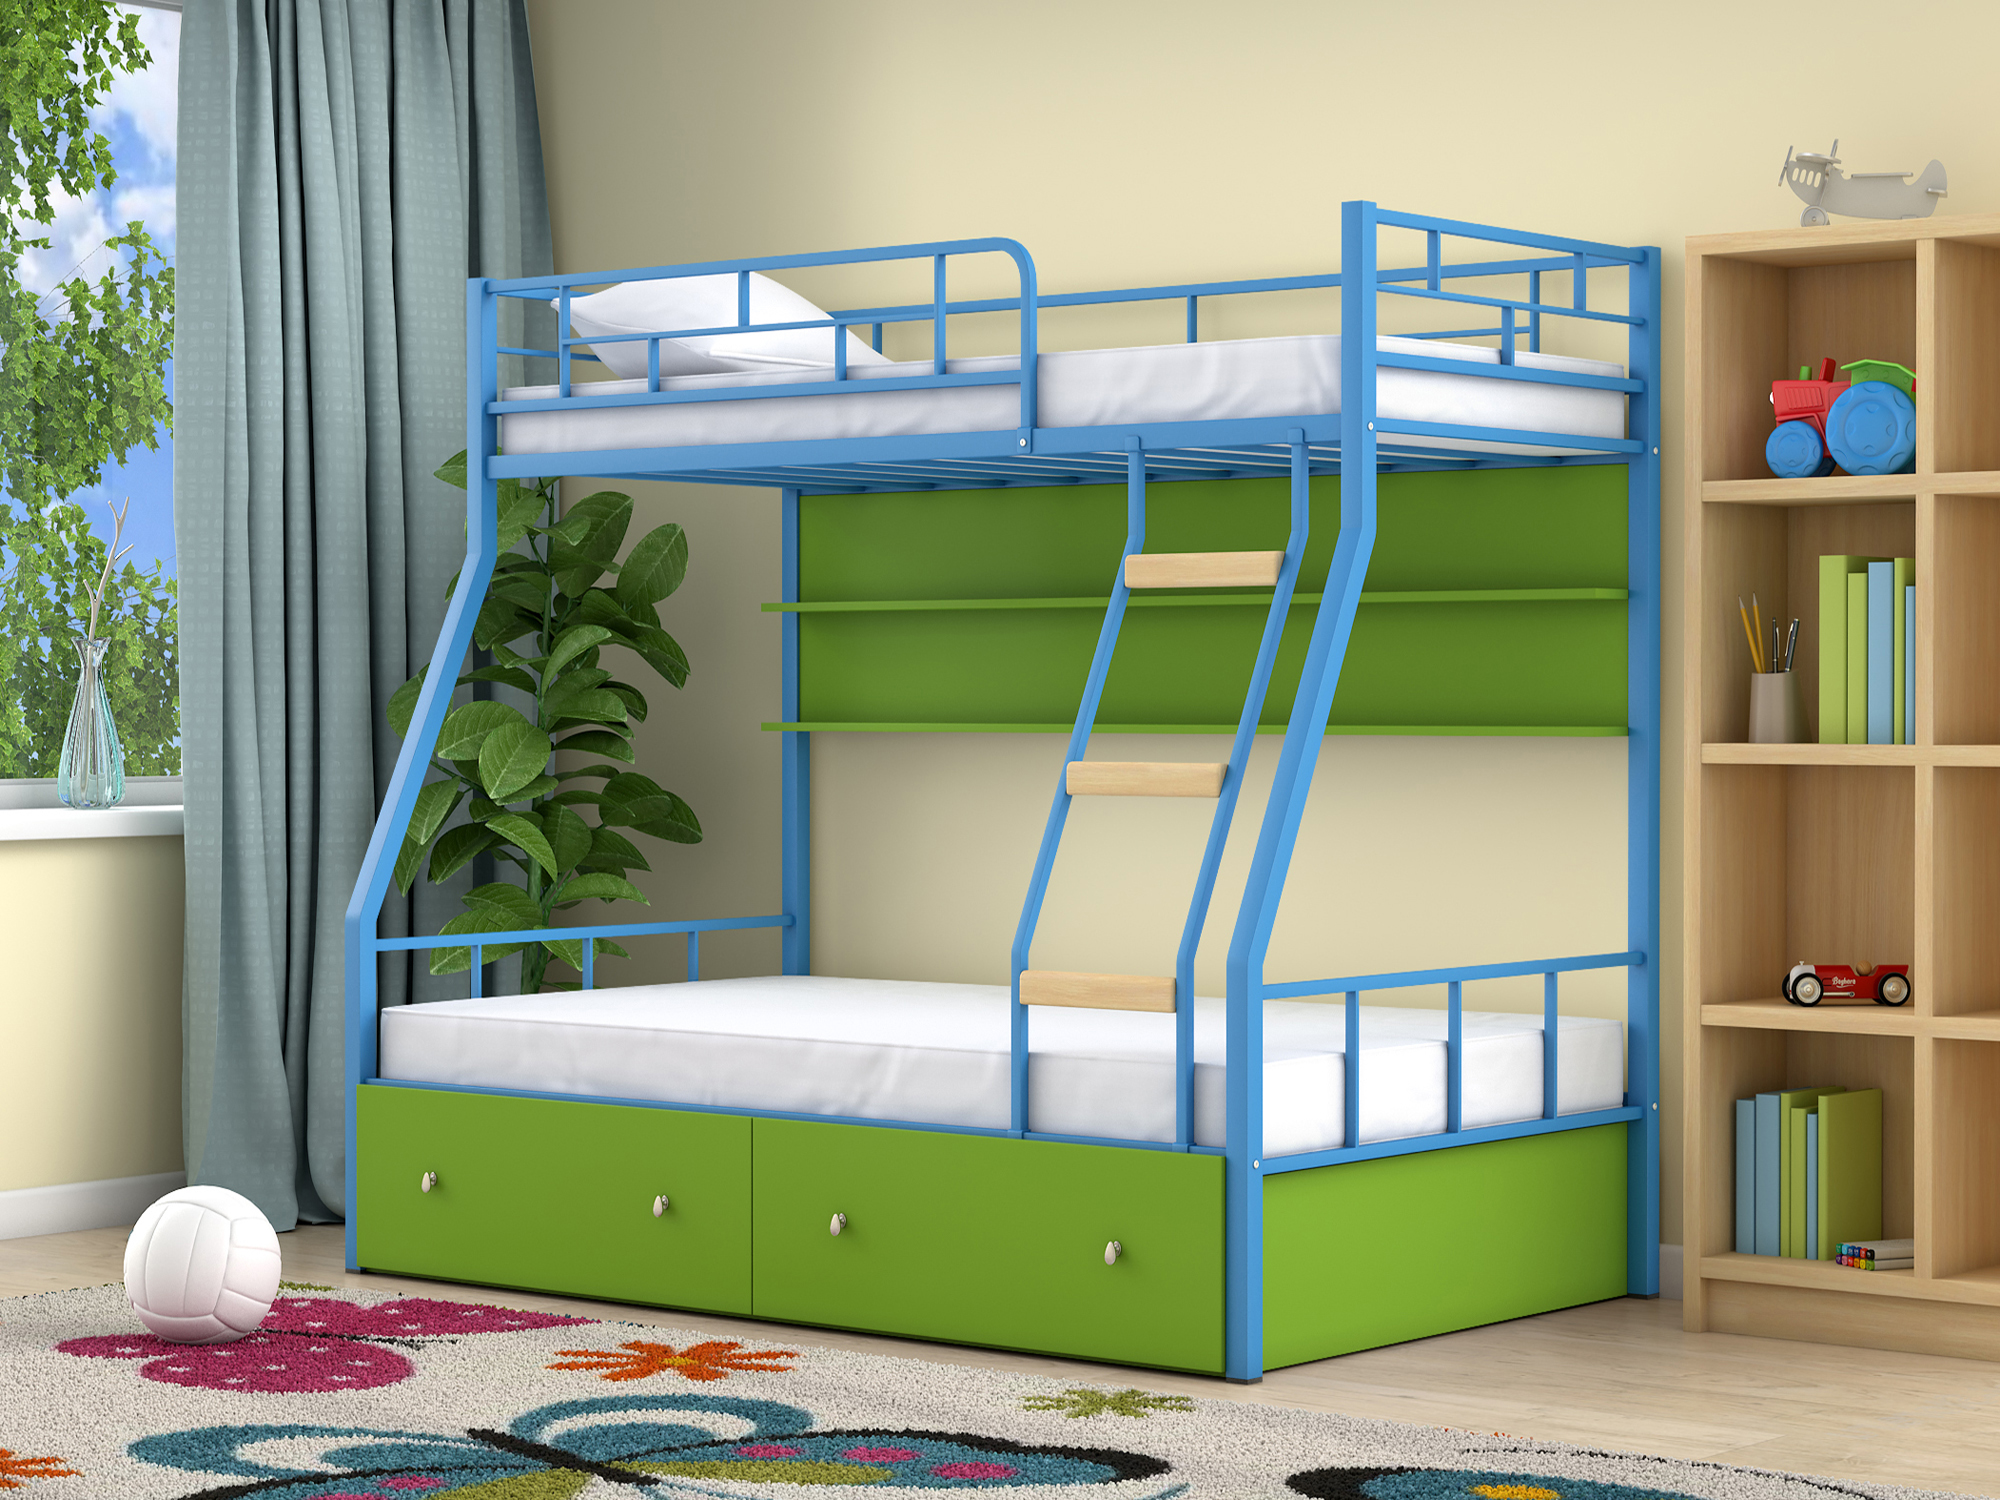 Двухъярусная кровать Радуга (90х190/120х190) Зеленый, Голубой, ЛДСП, Металл цена и фото